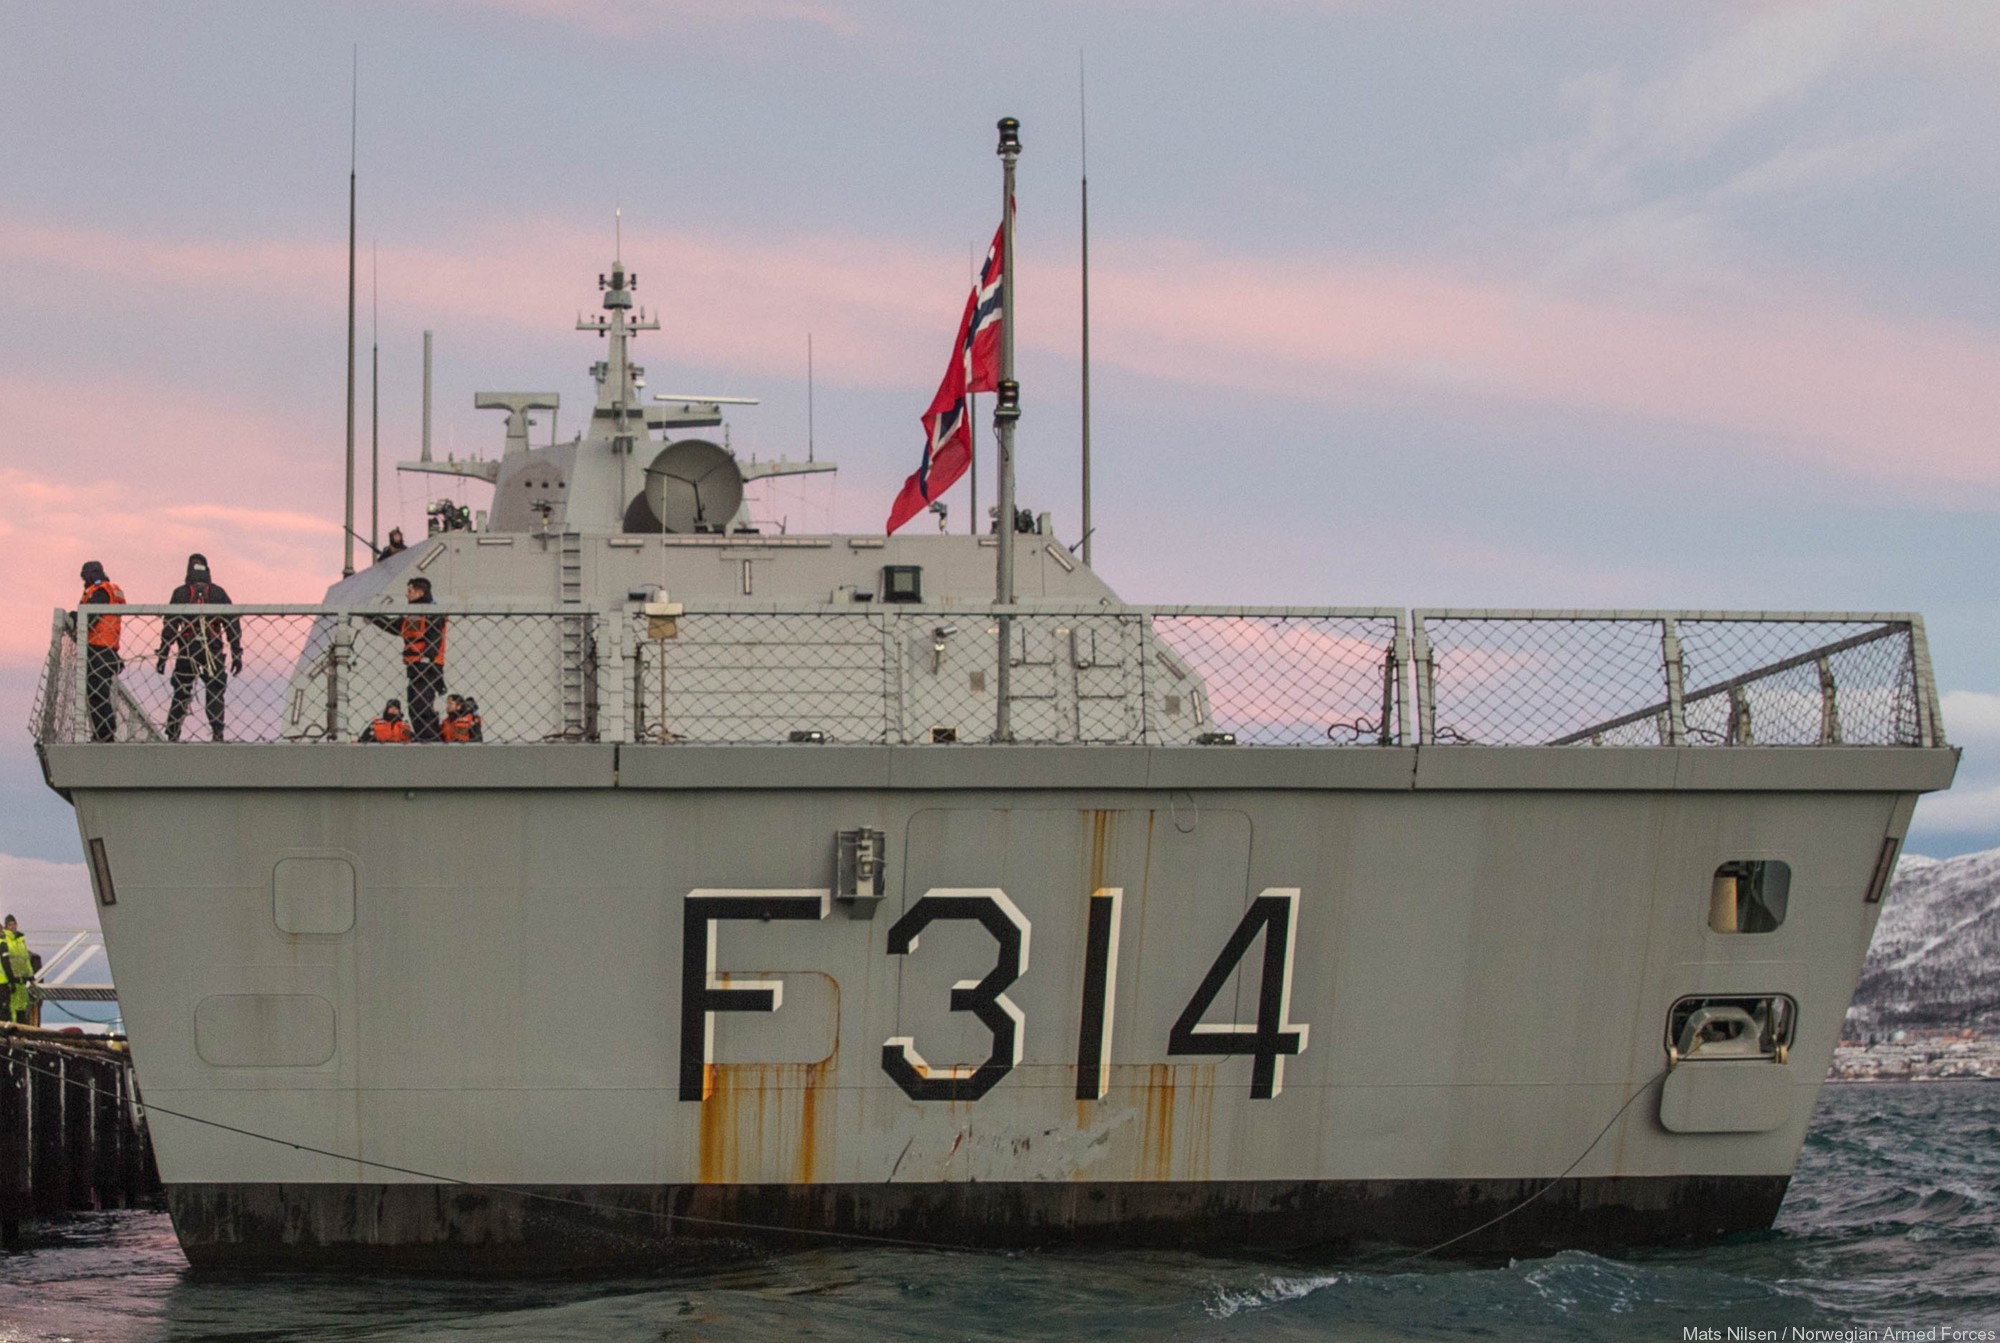 f-314 thor heyerdahl hnoms knm fridtjof nansen class frigate royal norwegian navy 11 sjoforsvaret